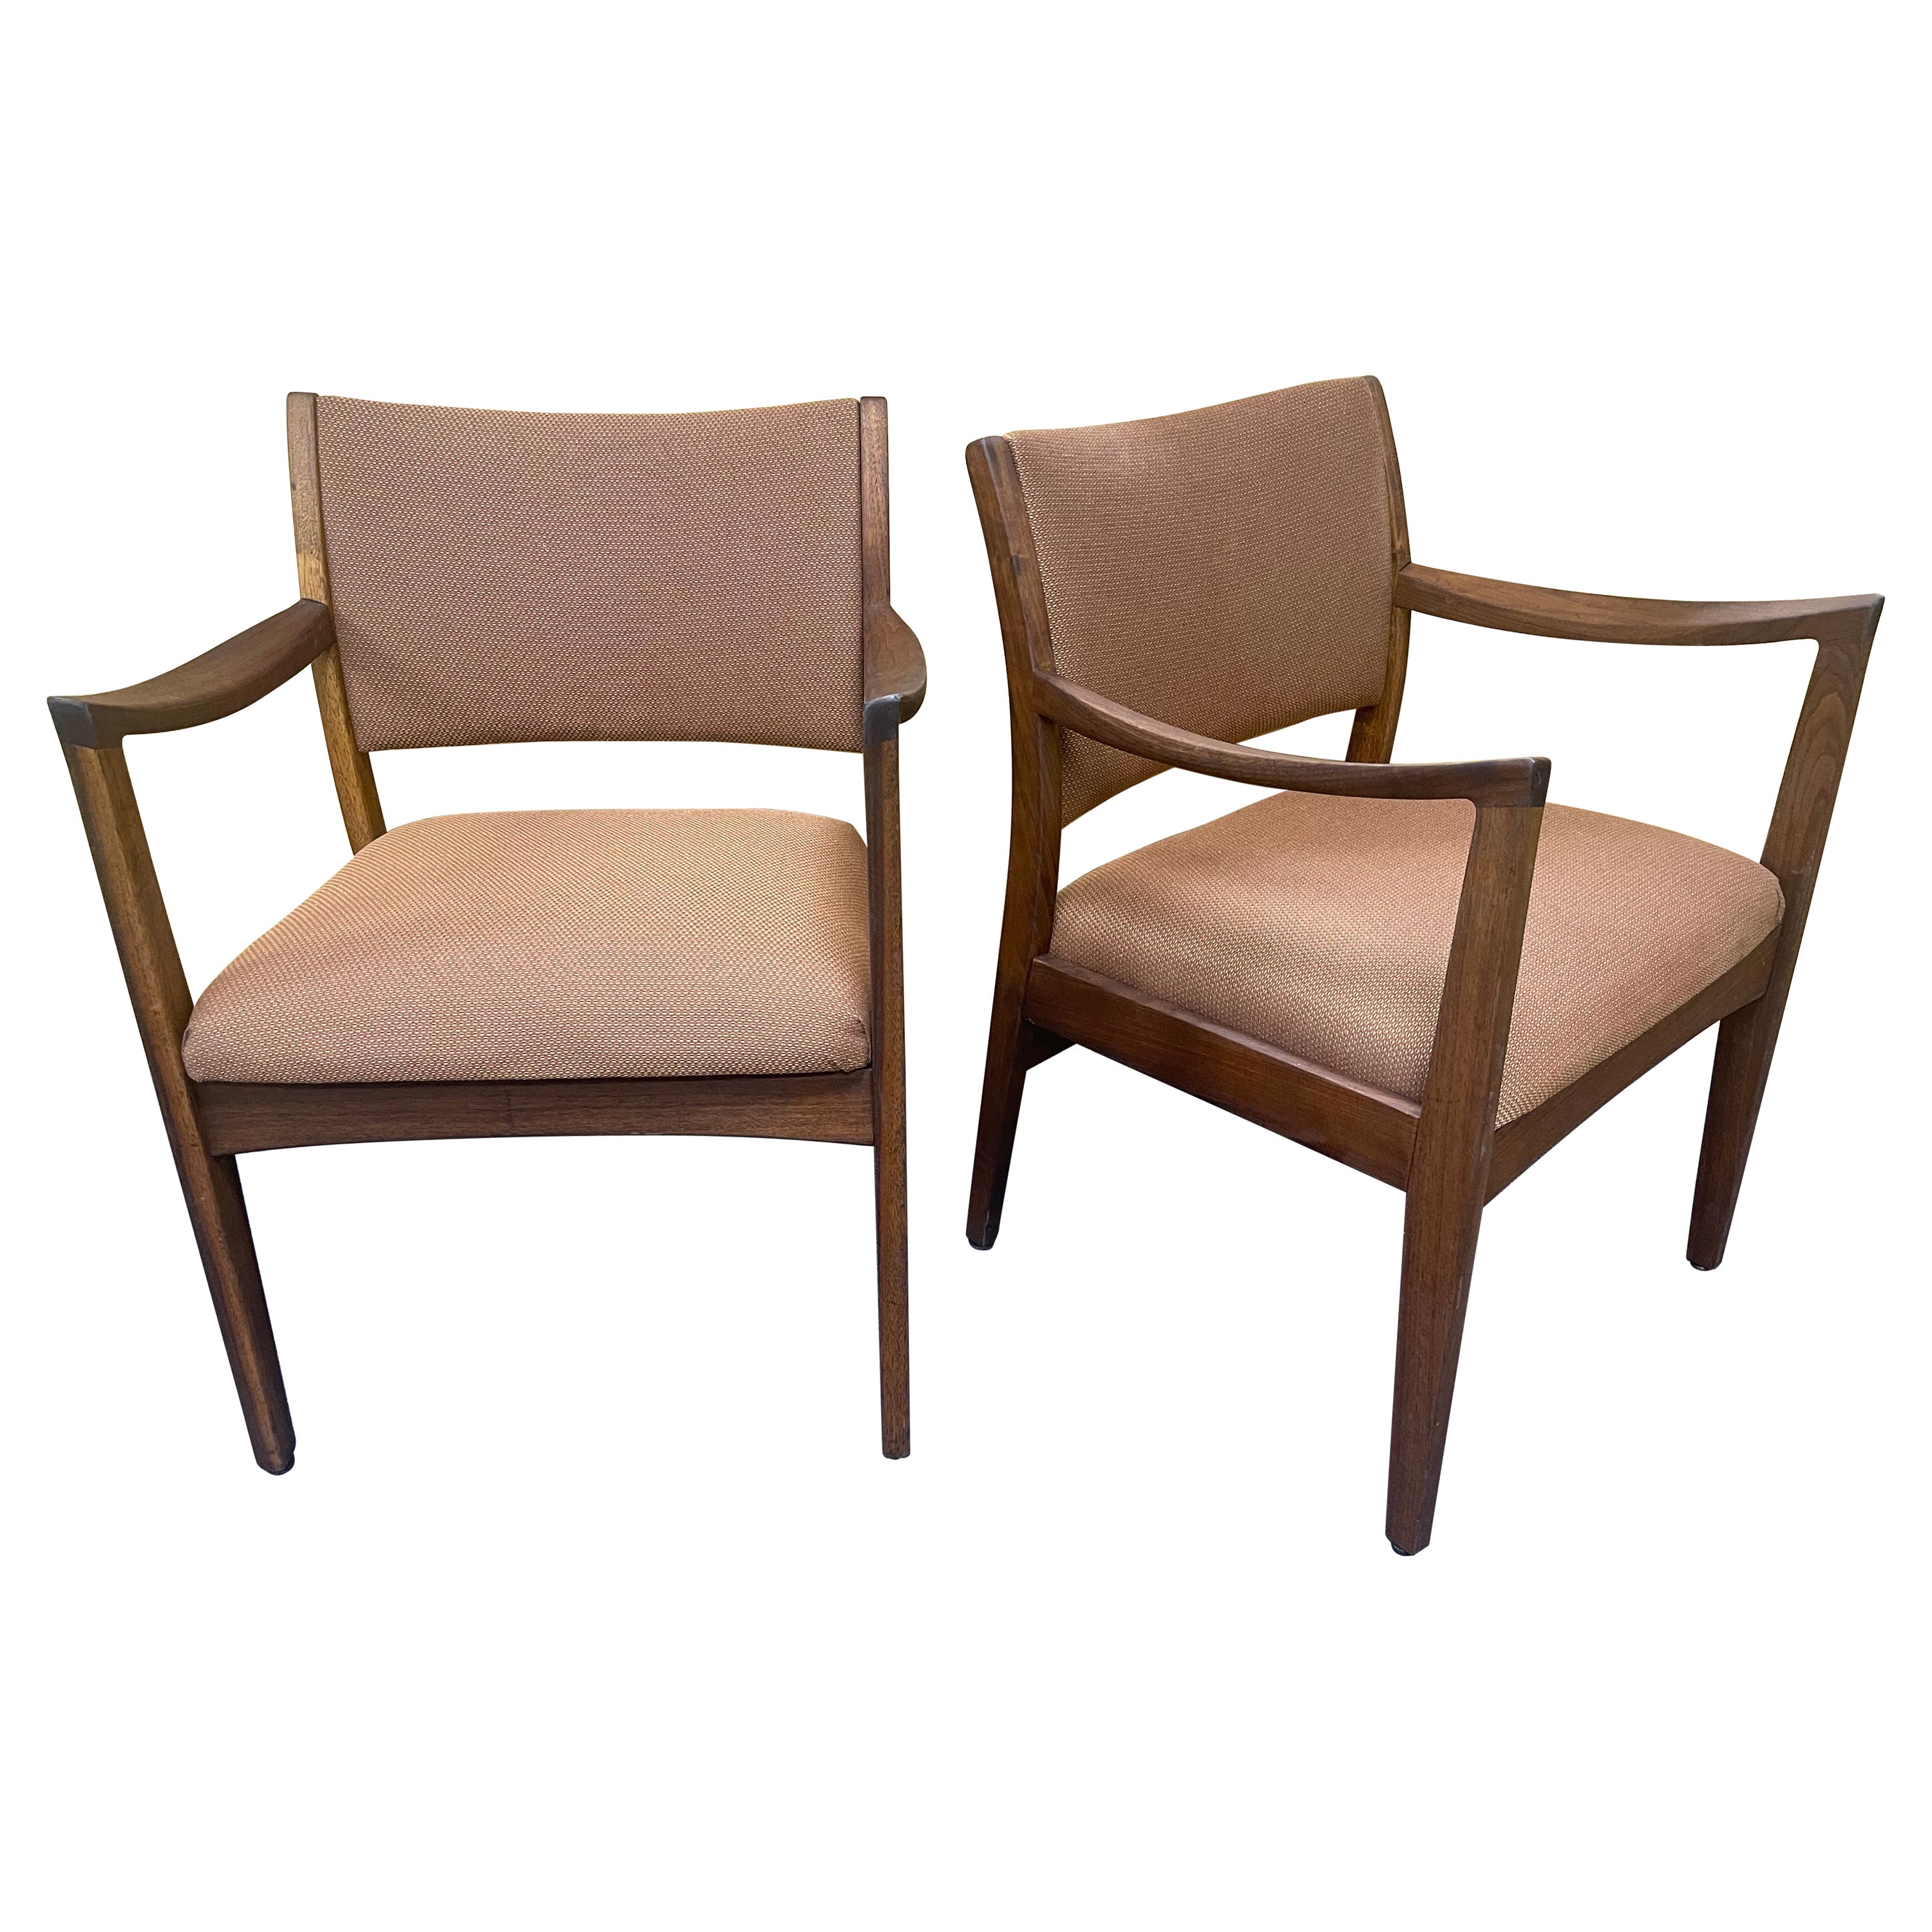 Paar MCM-Sessel aus Nussbaumholz von Johnson Furniture Company im Stil von Risom